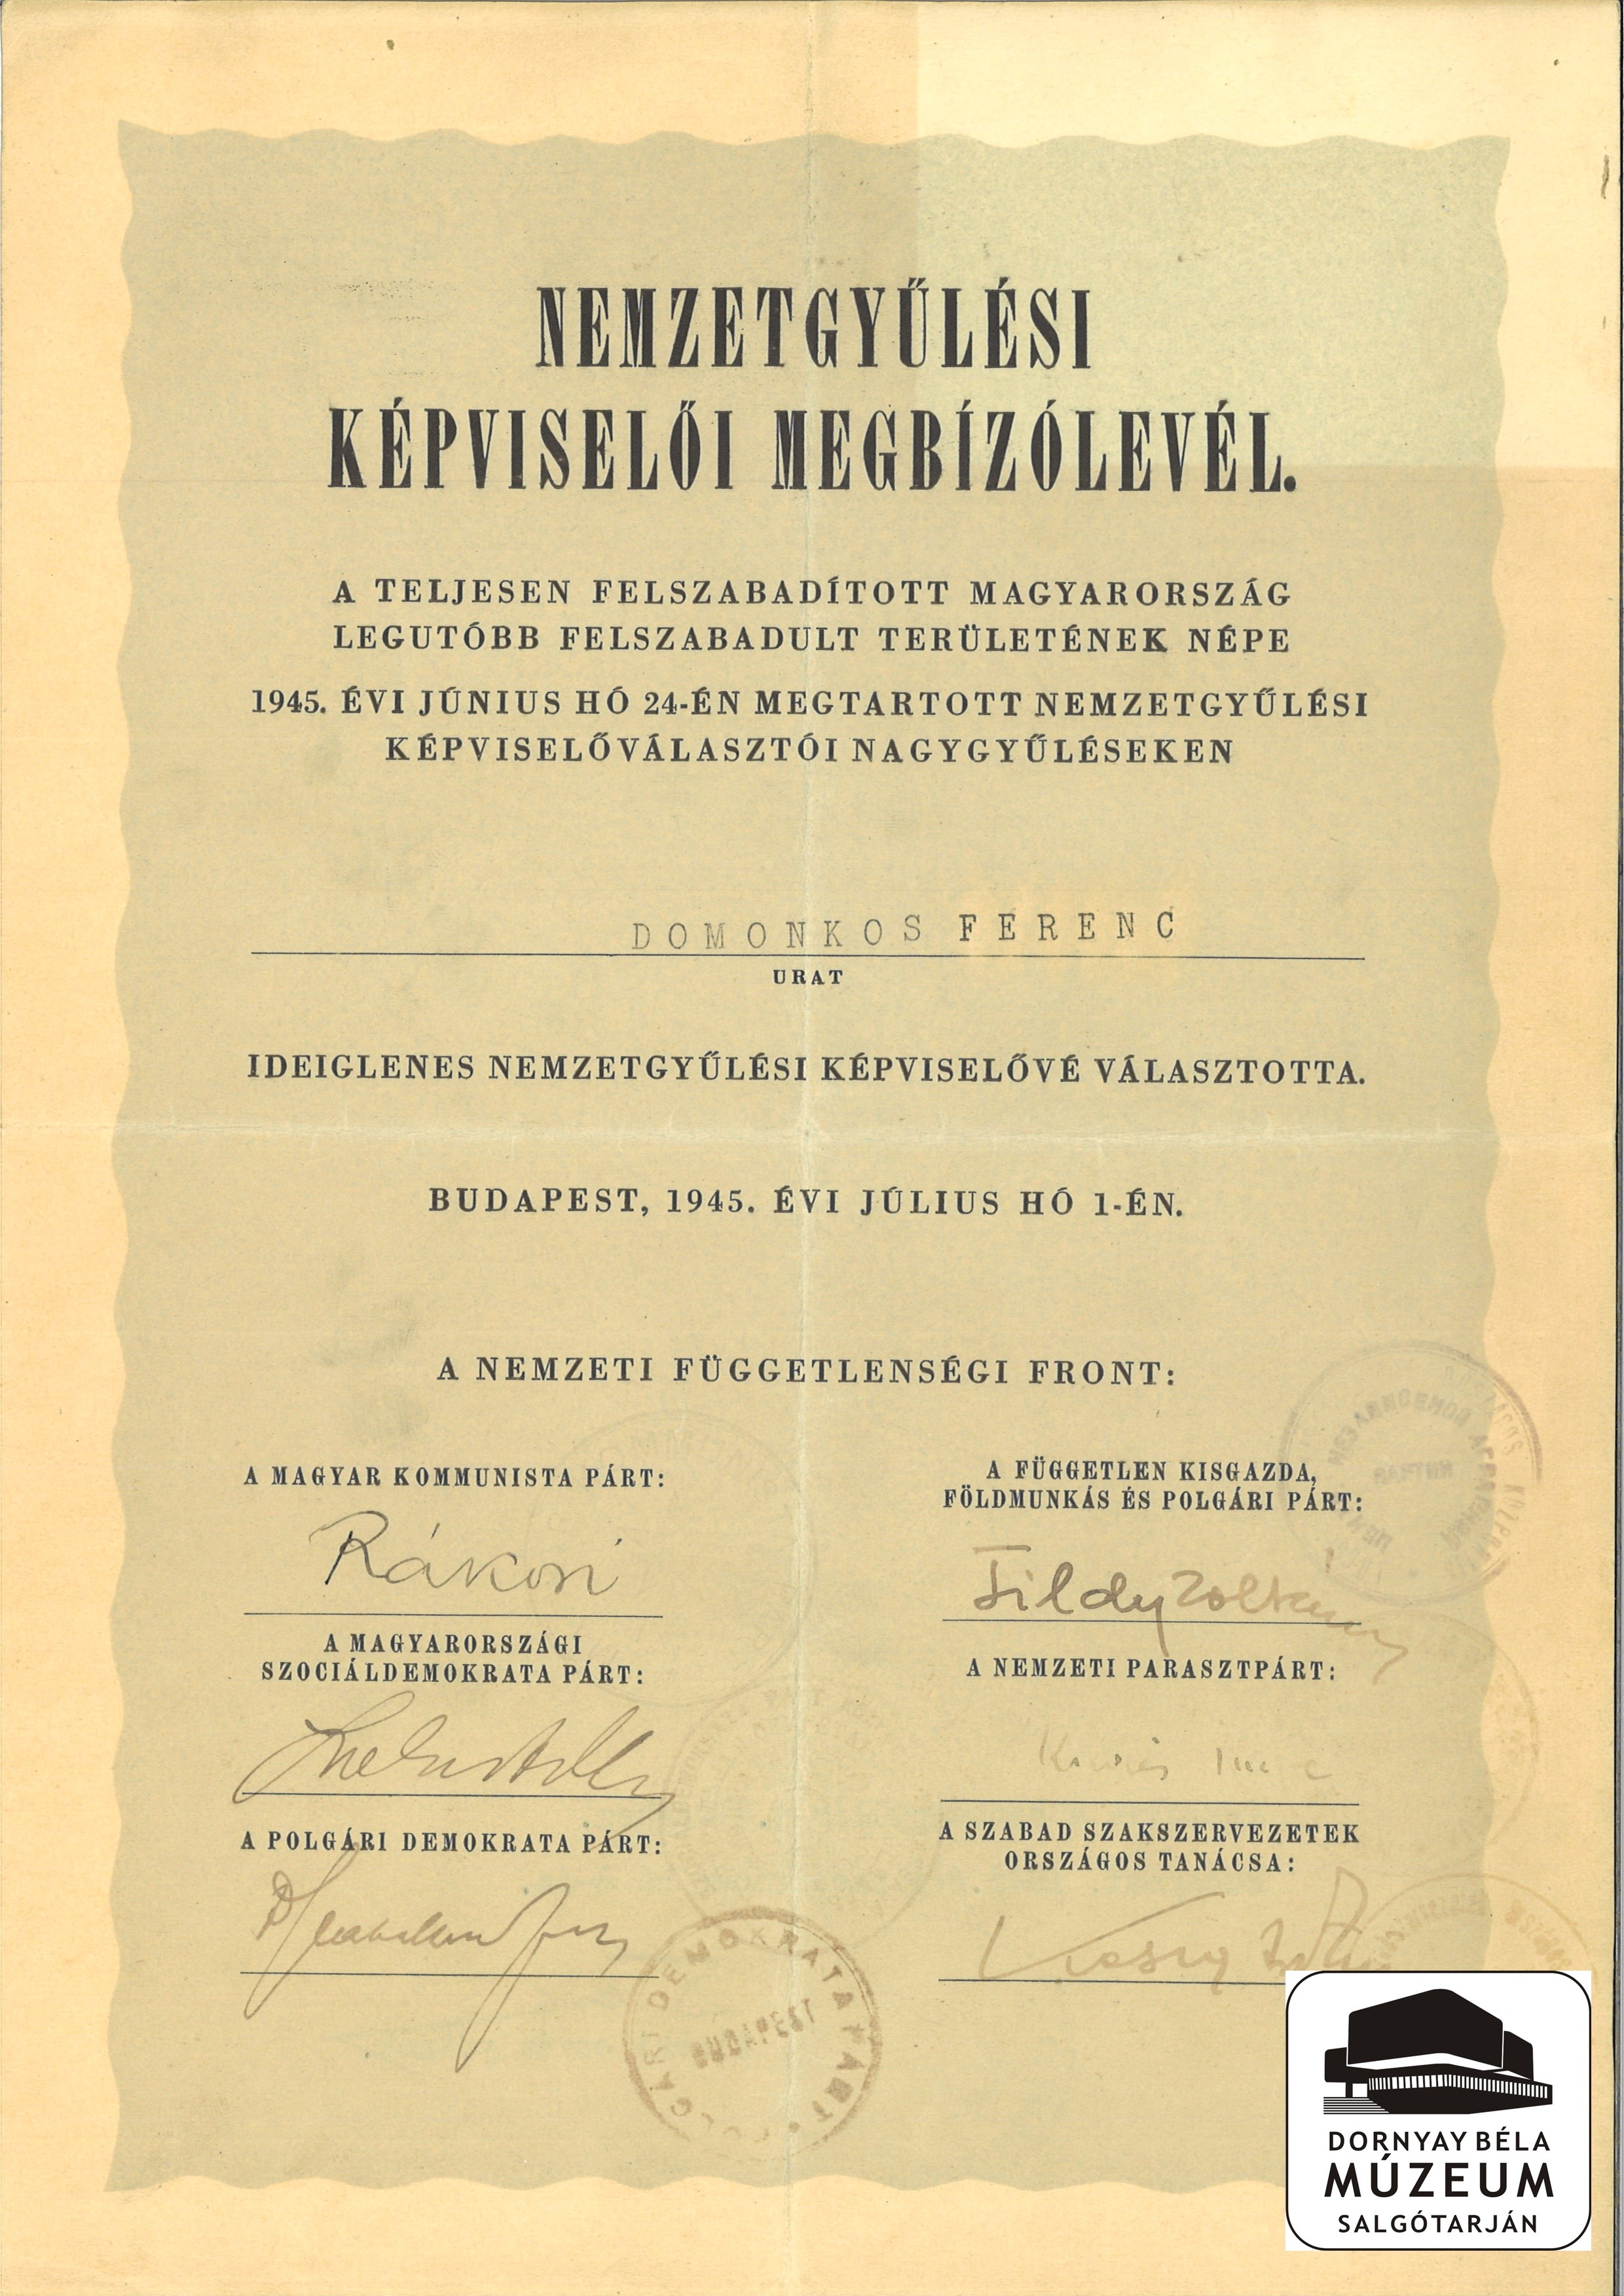 Nemzetgyűlési képviselői meghívó levél Domonkos Ferenc részére (Dornyay Béla Múzeum, Salgótarján CC BY-NC-SA)